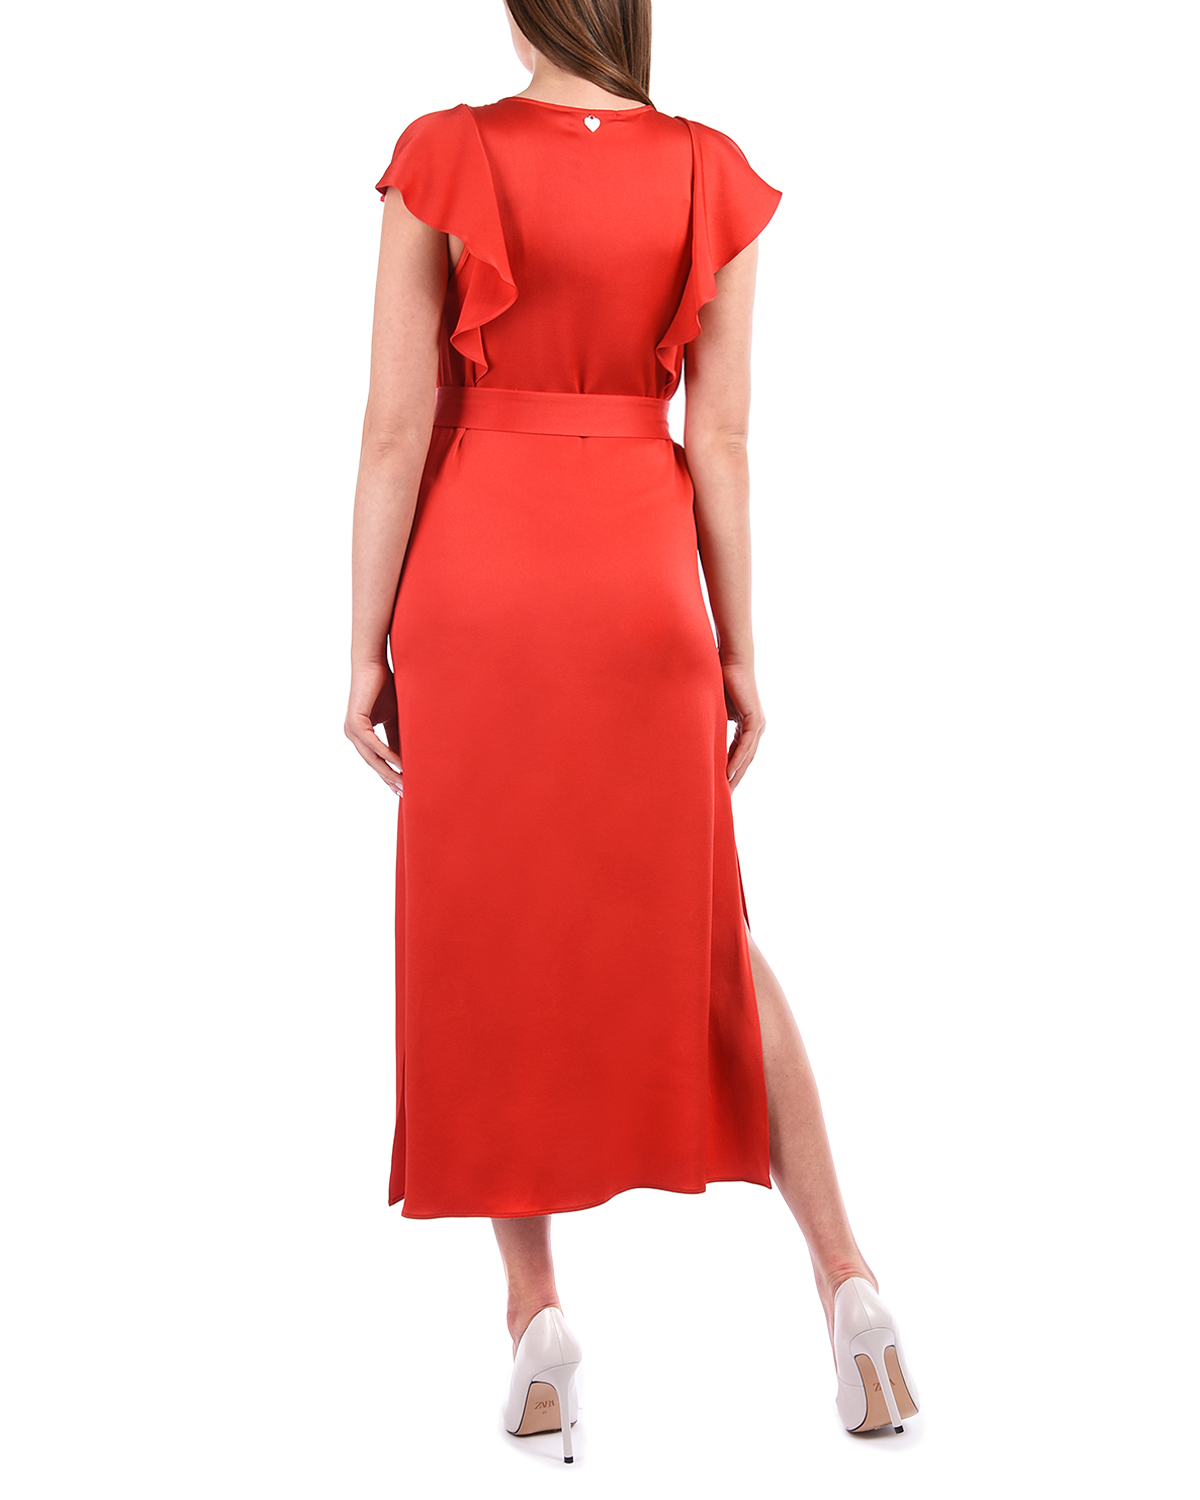 Красное платье с поясом TWINSET, размер 44, цвет красный - фото 3